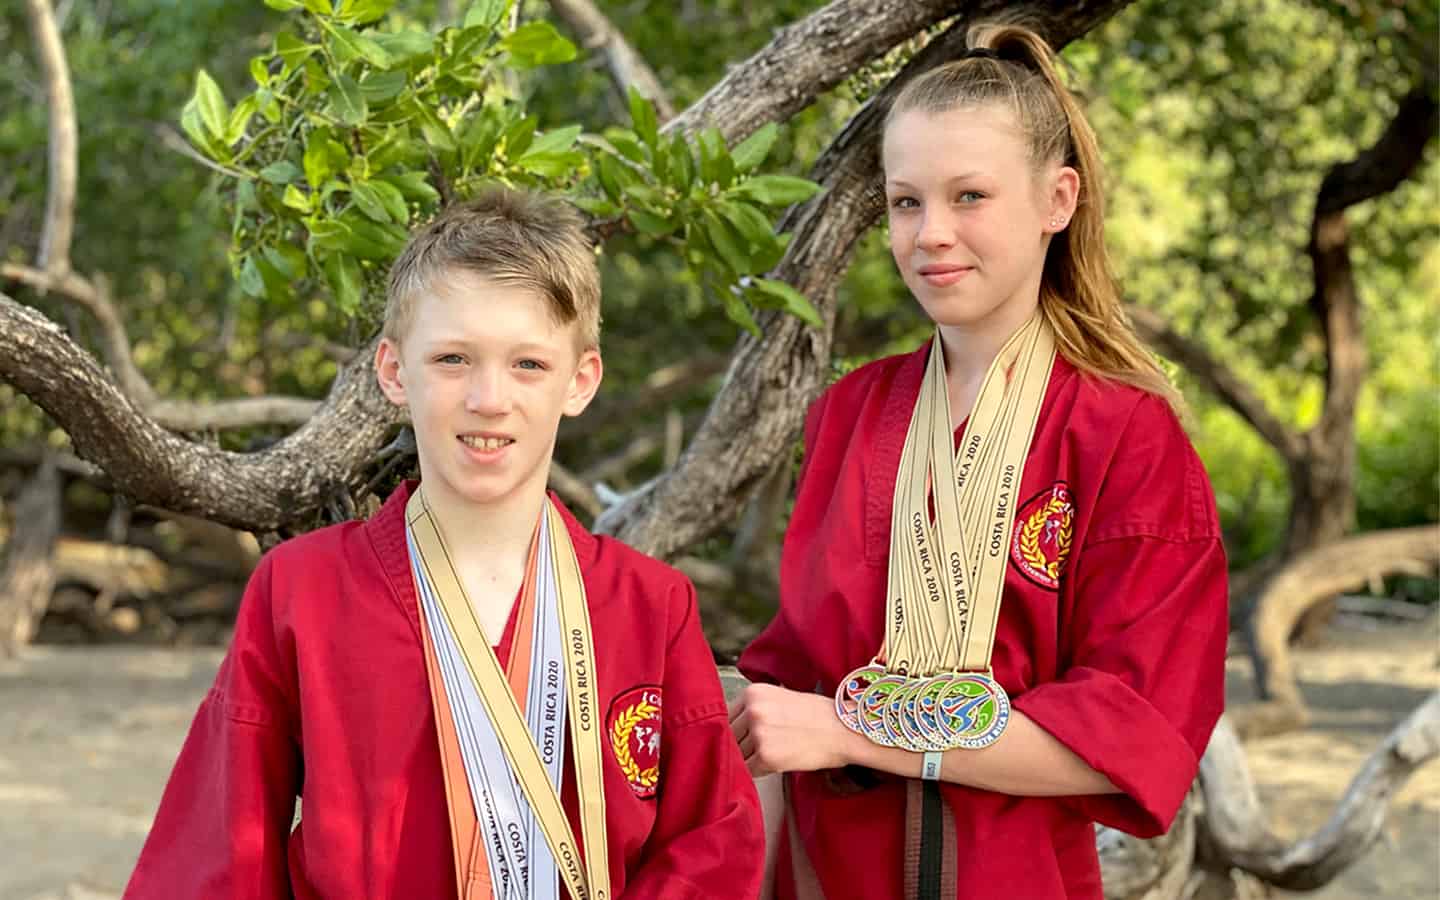 Siblings rake in the medals in Costa Rica